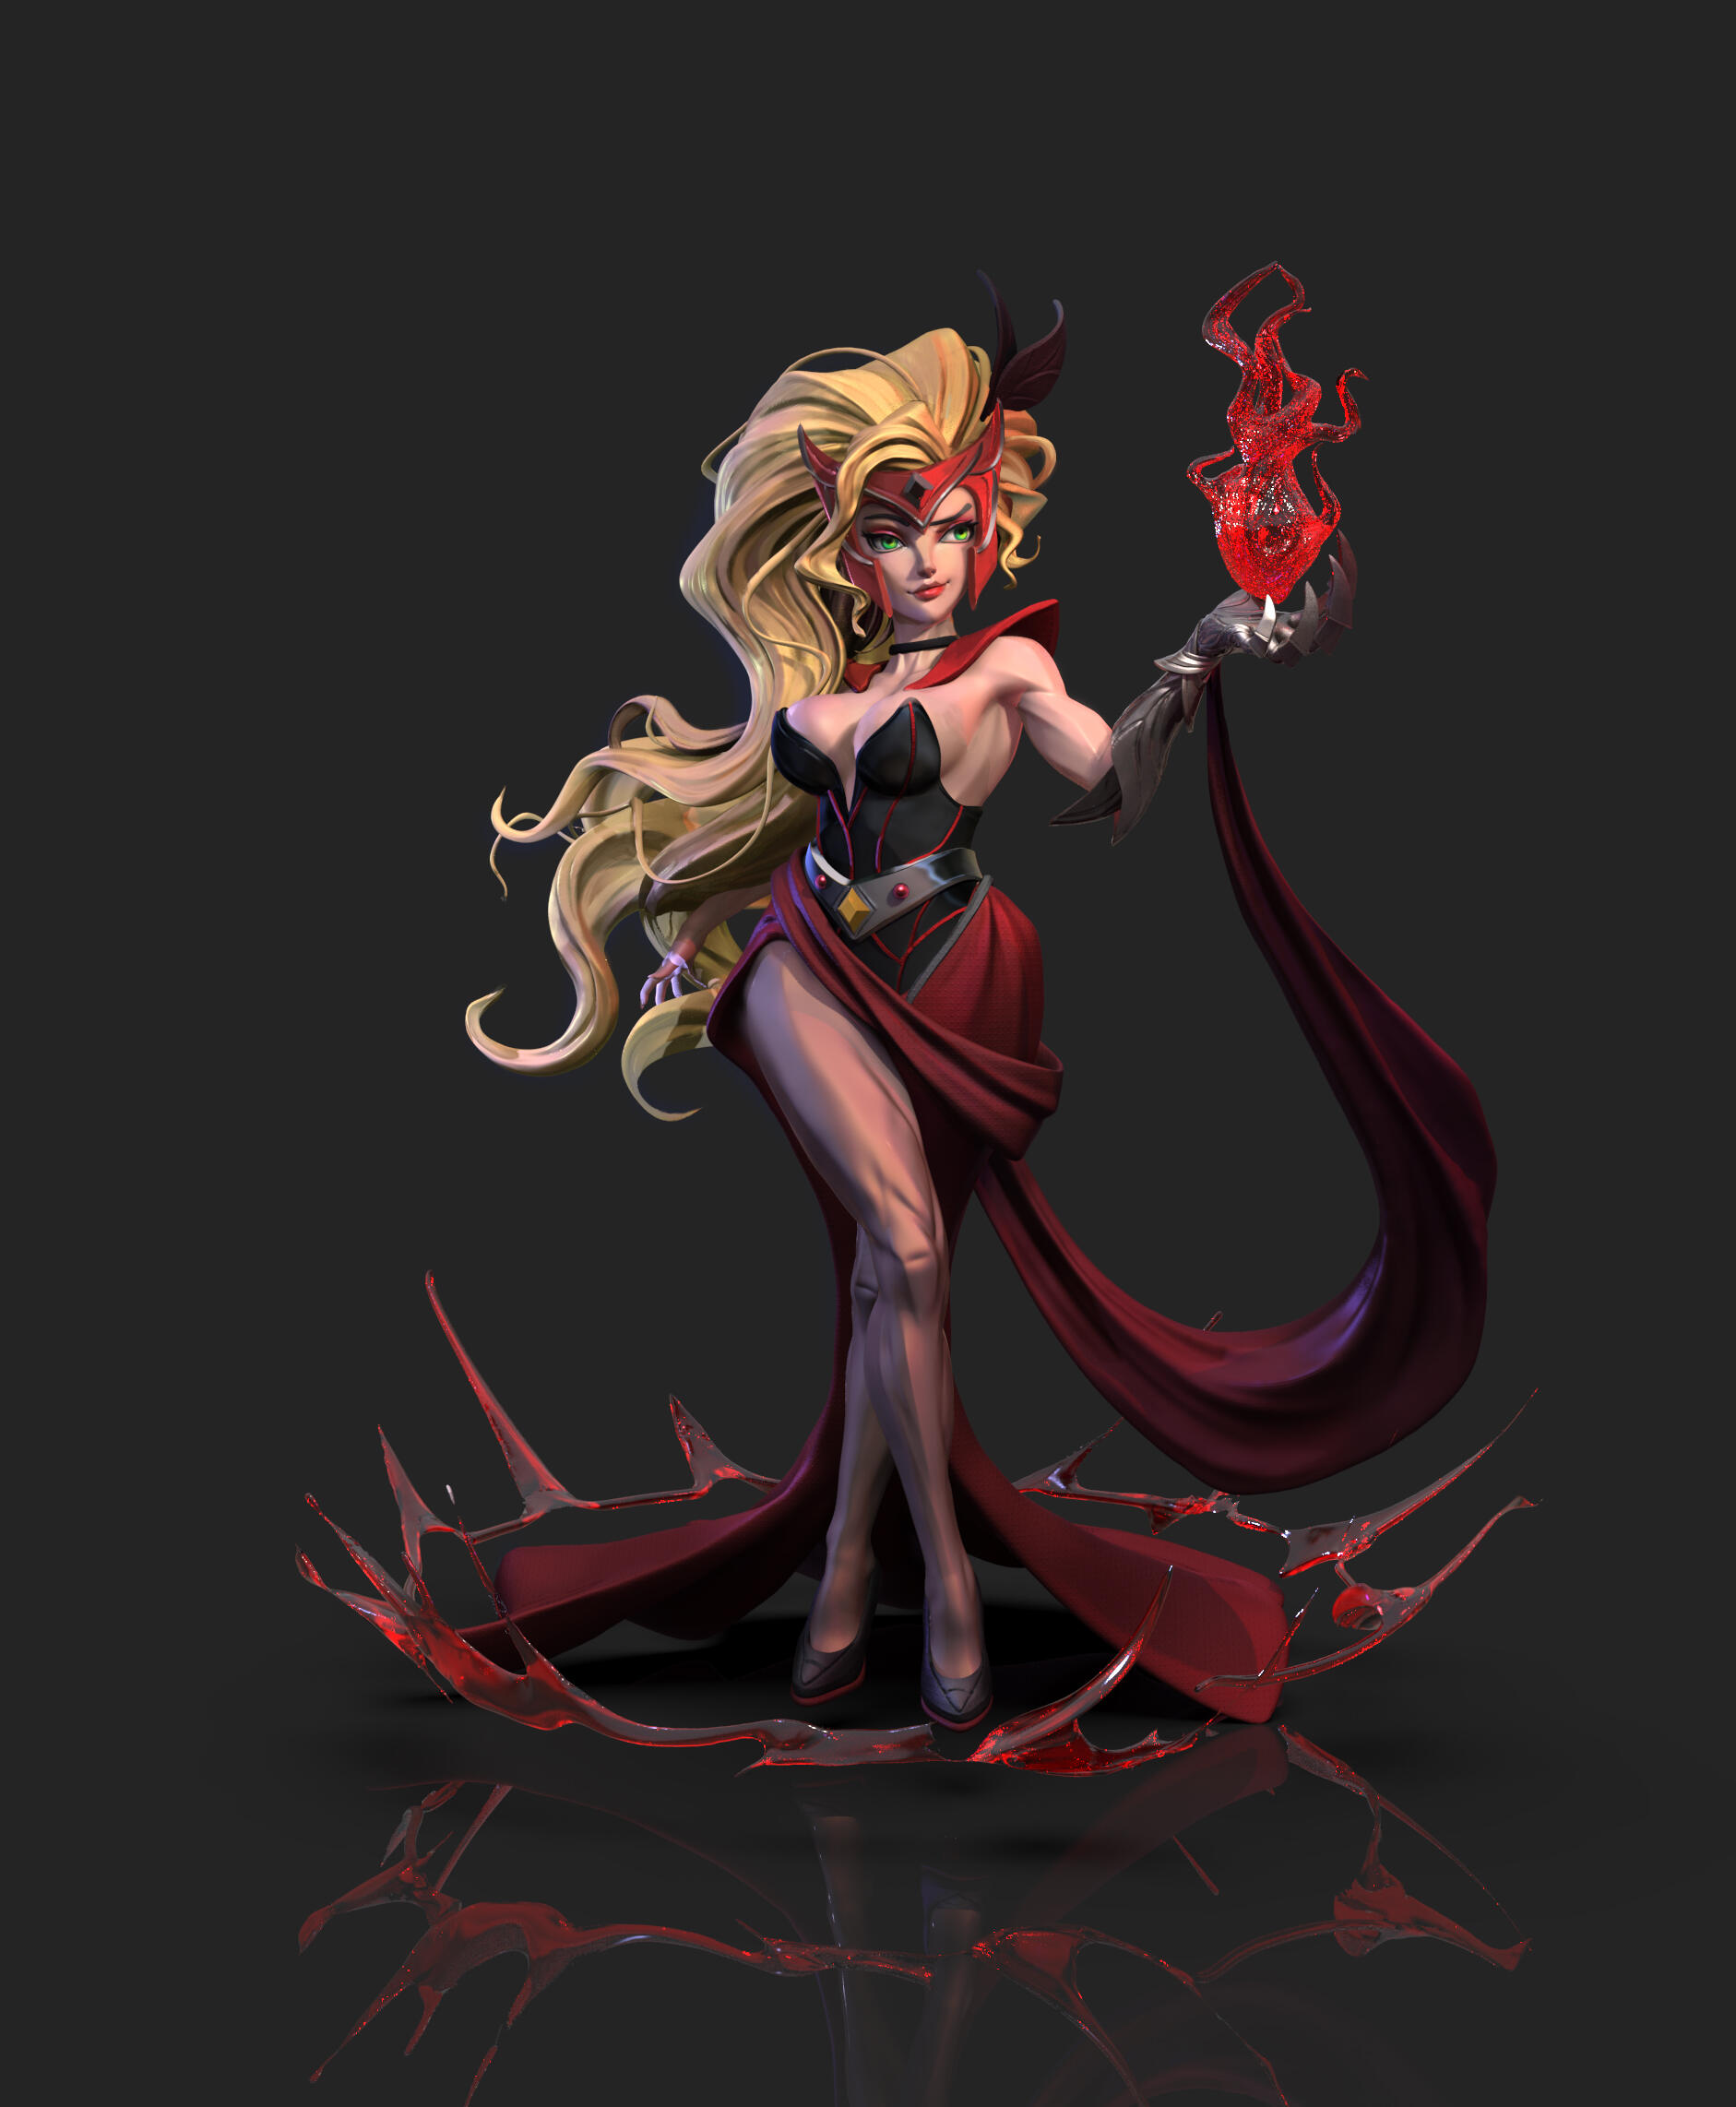 红女巫这个漫威英雄,想让她有套类似晚礼服的套装,所以设计了这个造型